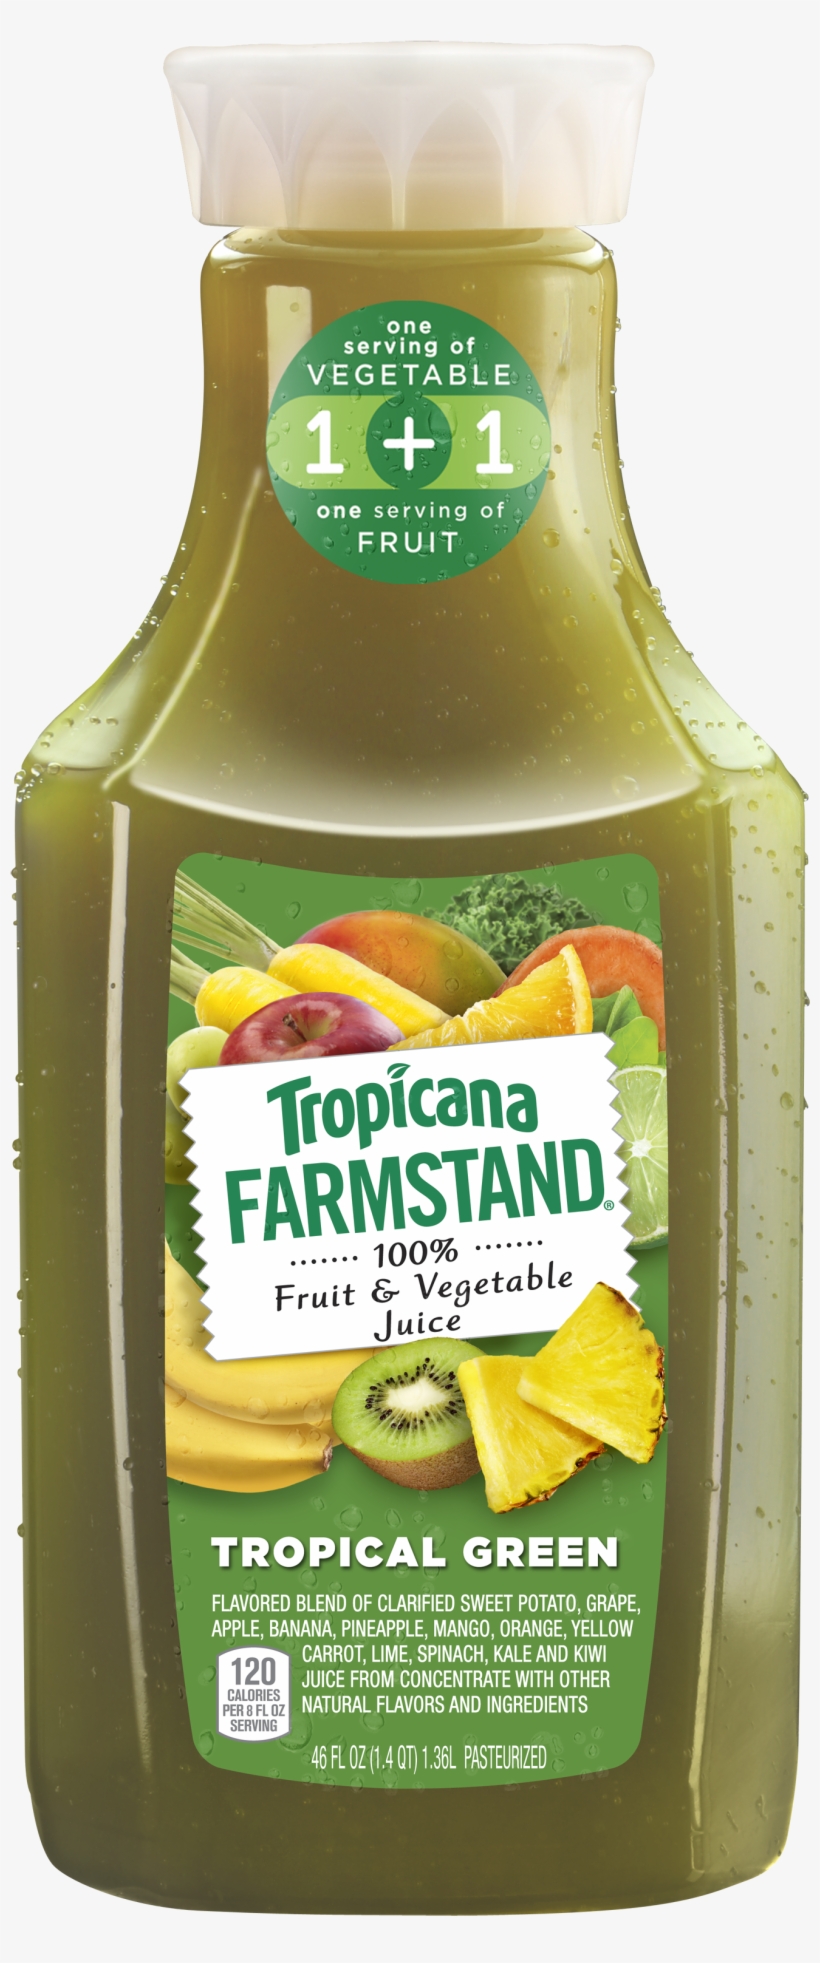 Tropicana Farmstand Harvest Fair - Tropicana Farmstand, transparent png #3647757